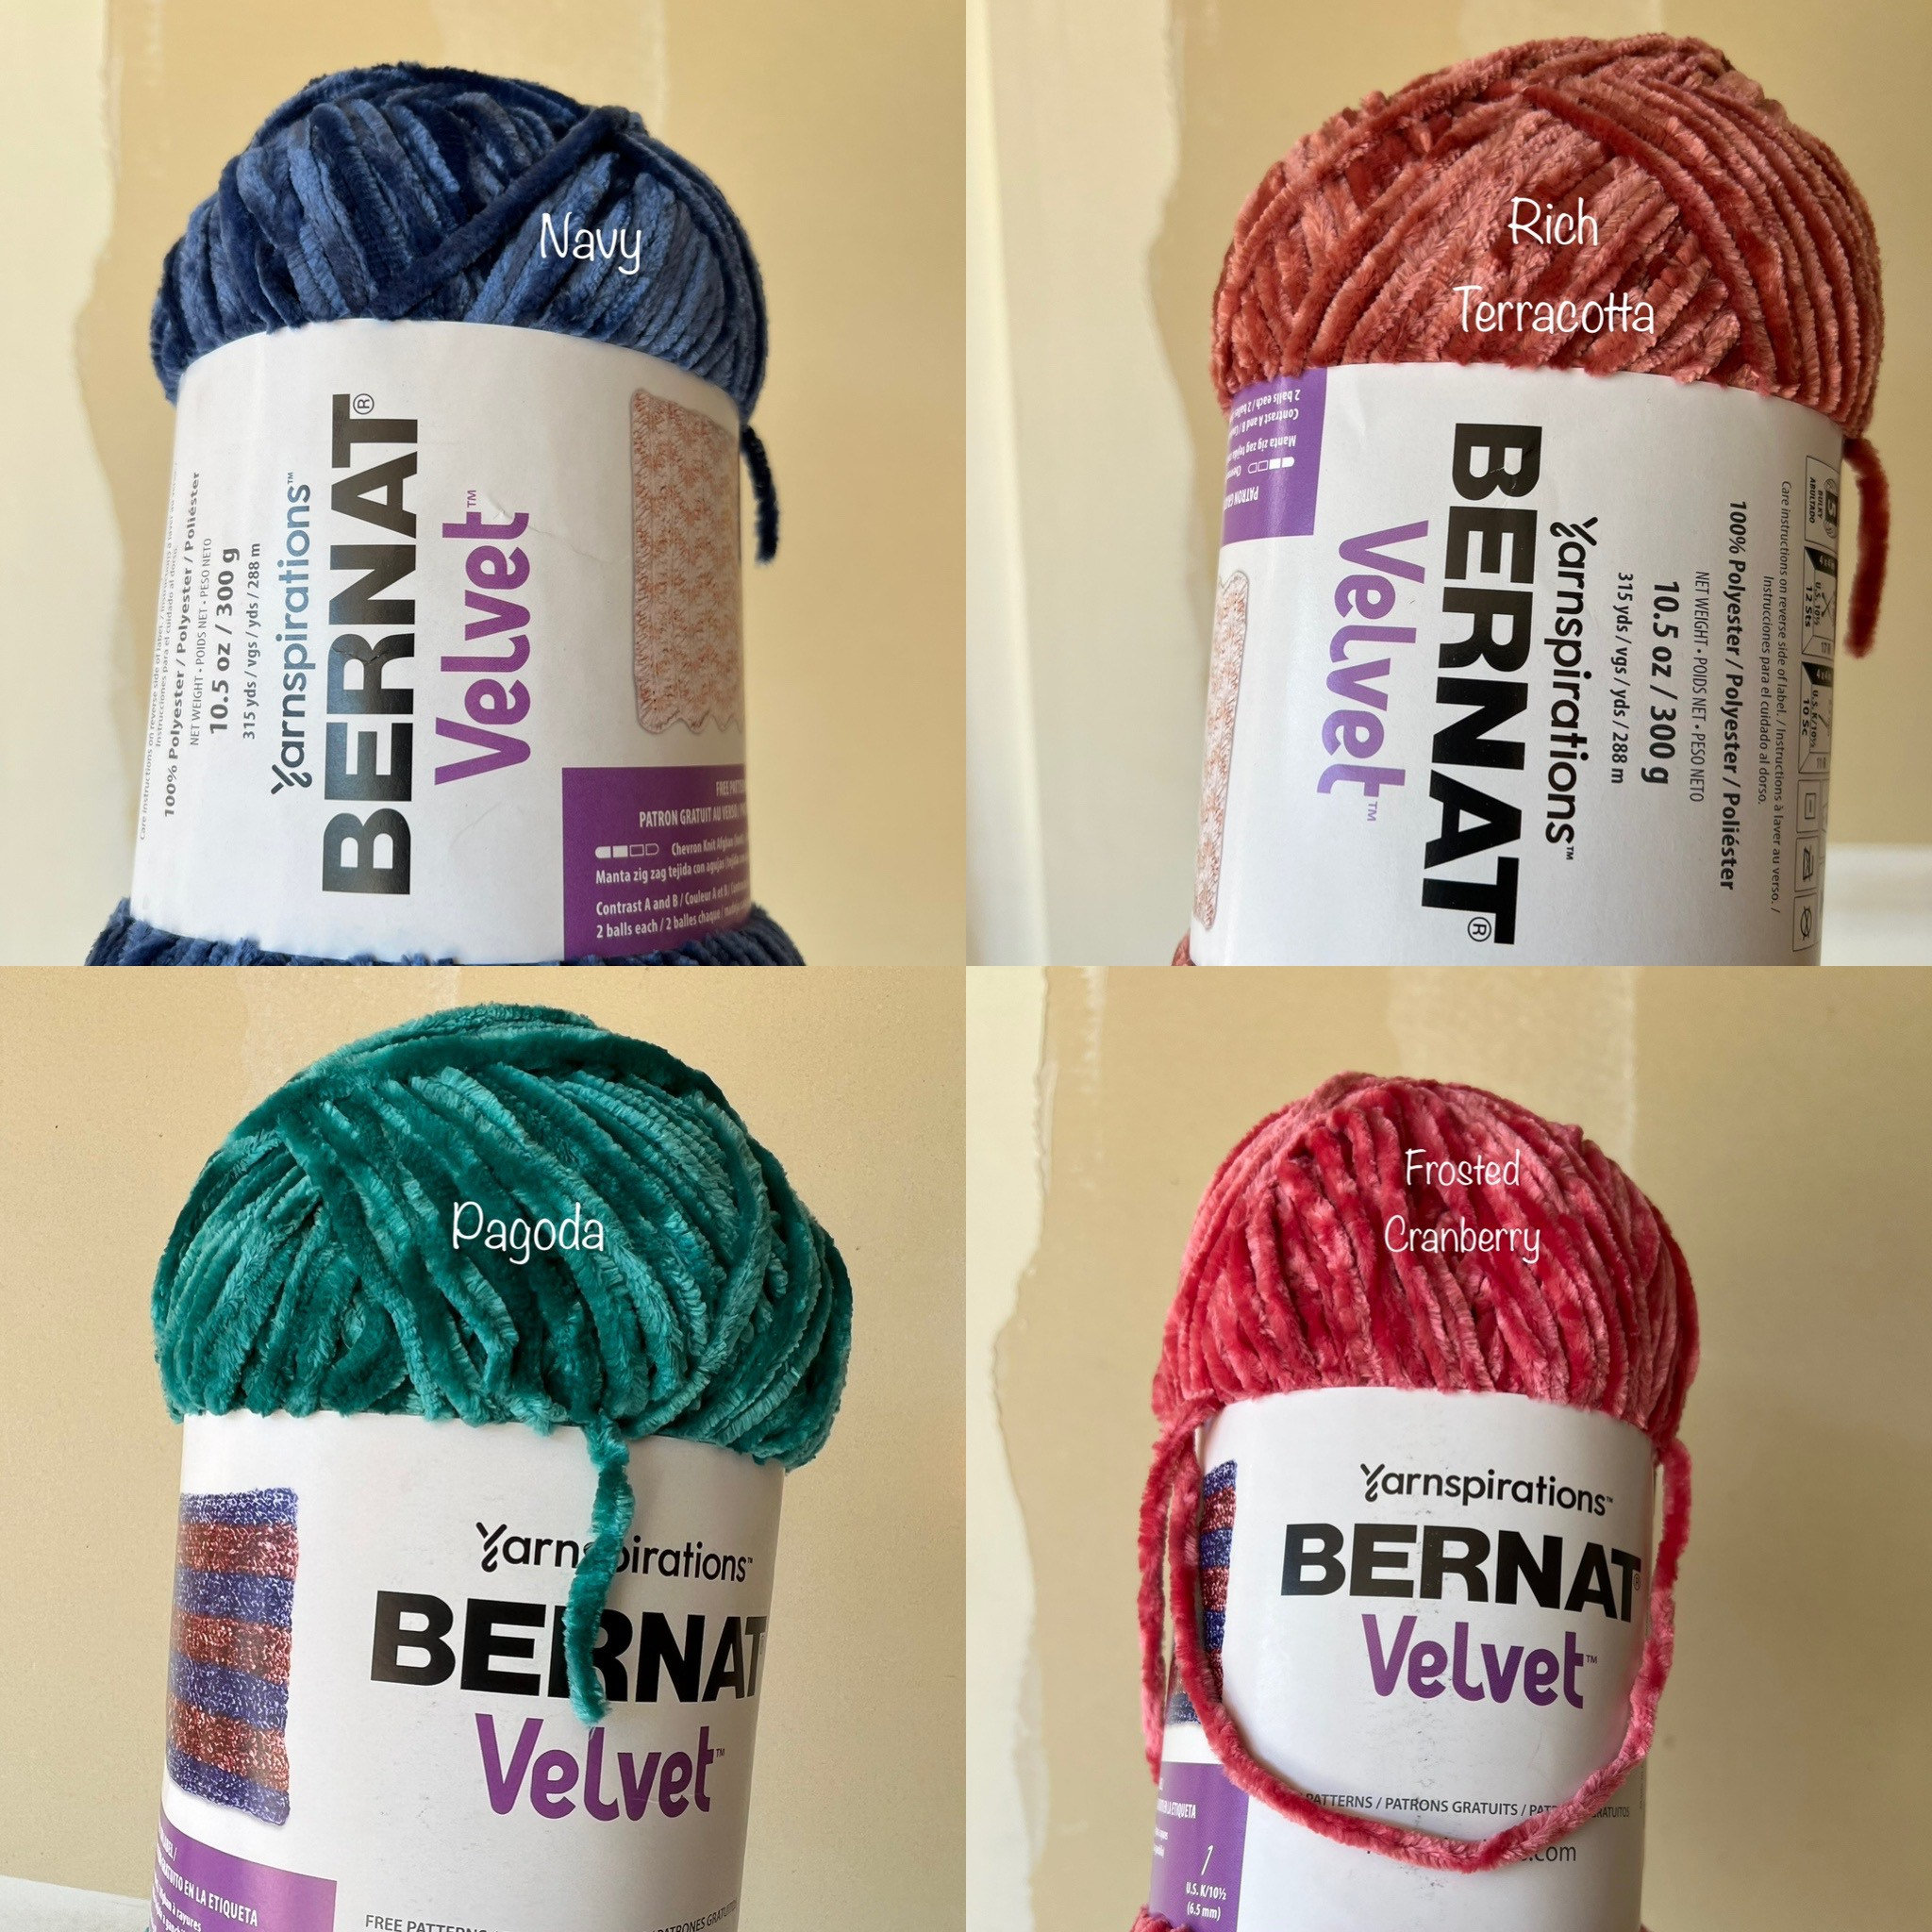 Bernat Velvet Yarn -  Norway